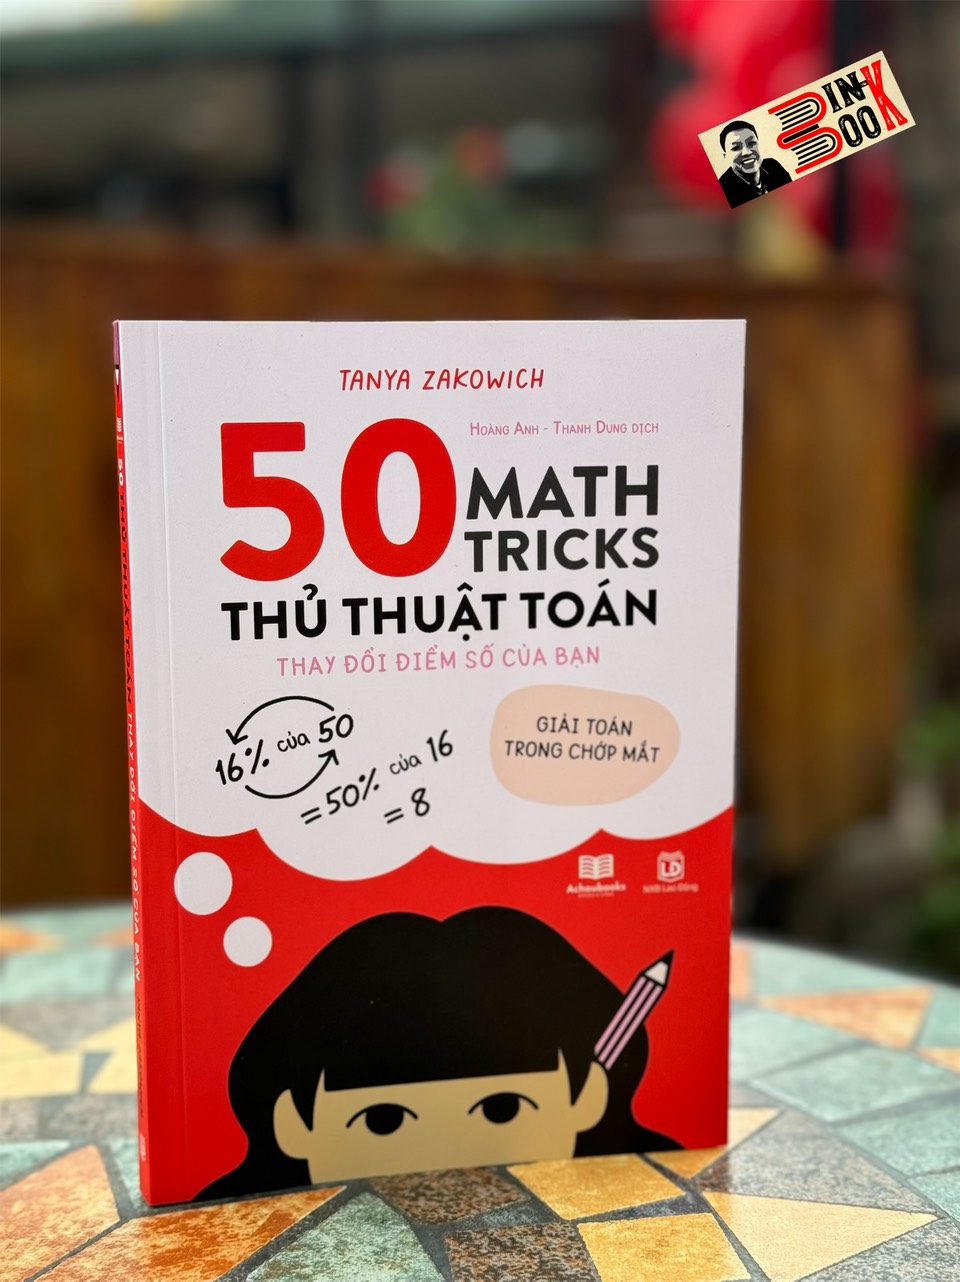 50 THỦ THUẬT TOÁN: Thay đổi điểm số của bạn; Giải toán trong chớp mắt  – Tanya Zakowich – Á Châu Books – NXB Lao động